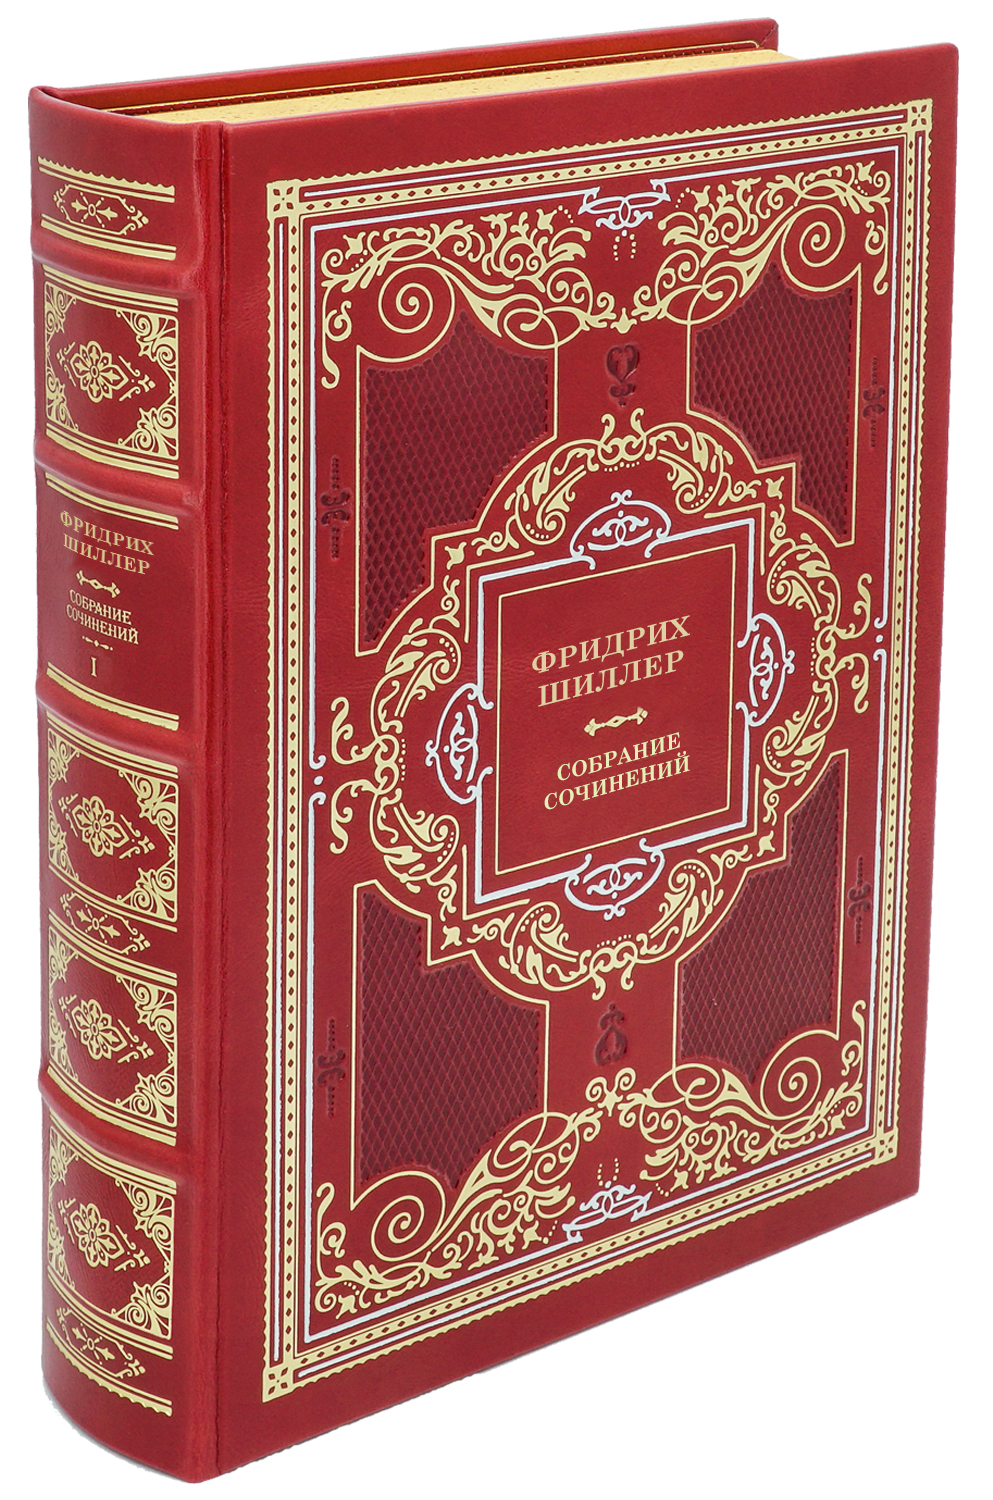 Собрание сочинений Фридриха Шиллера в 5 томах в дизайне «Барокко»